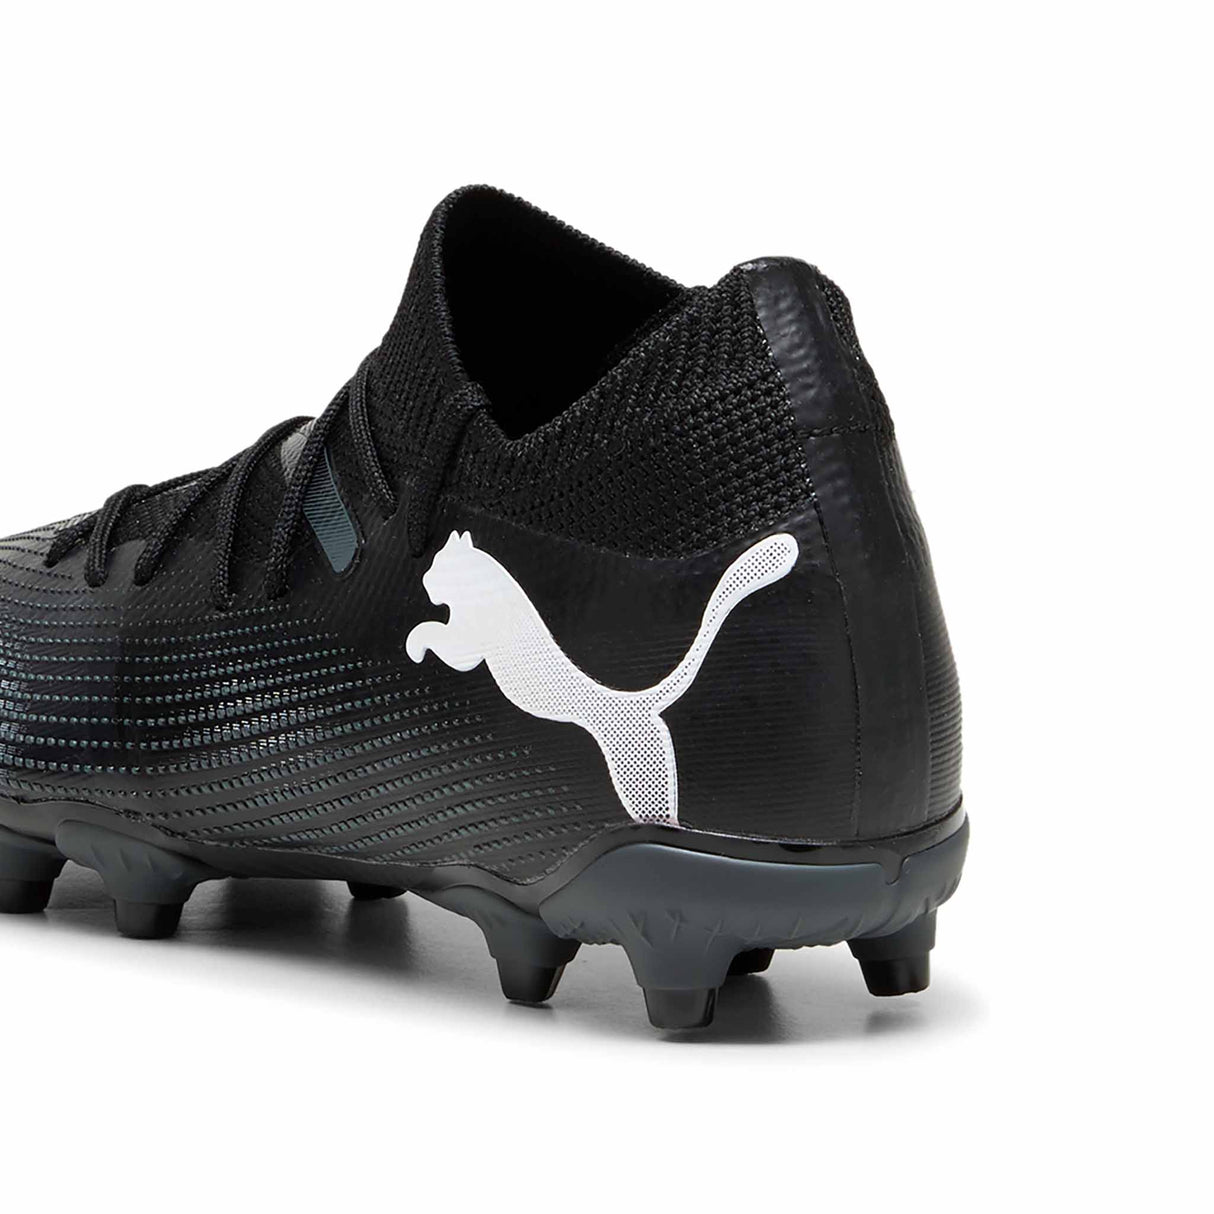 Puma Future 7 Match FG/AG chaussures de soccer à crampons junior - Puma Black / Puma White